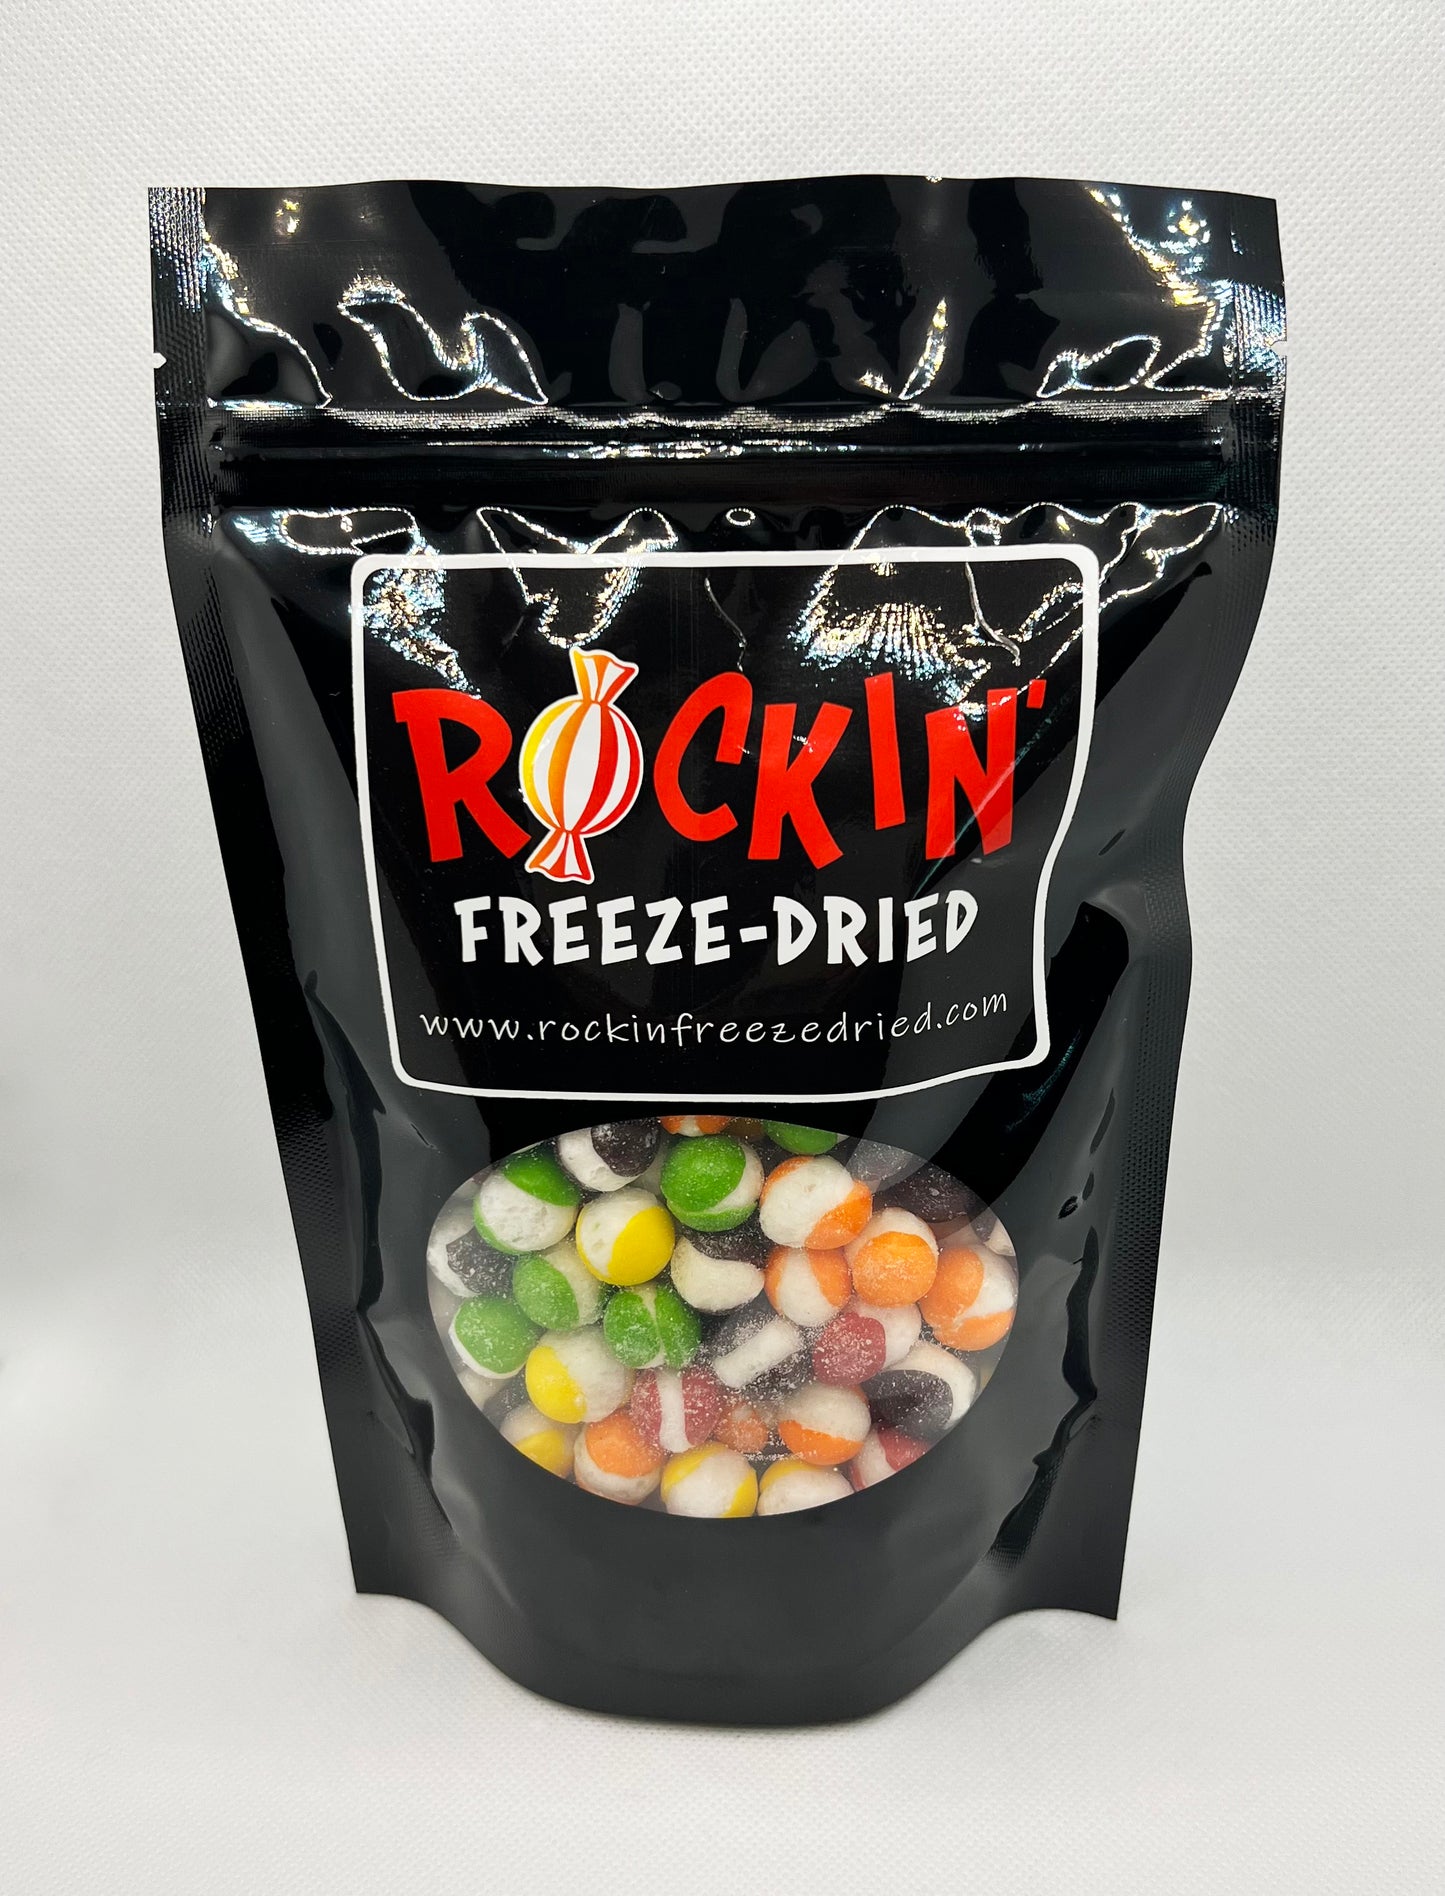 "ROCKIN' Rainbows" Freeze-Dried